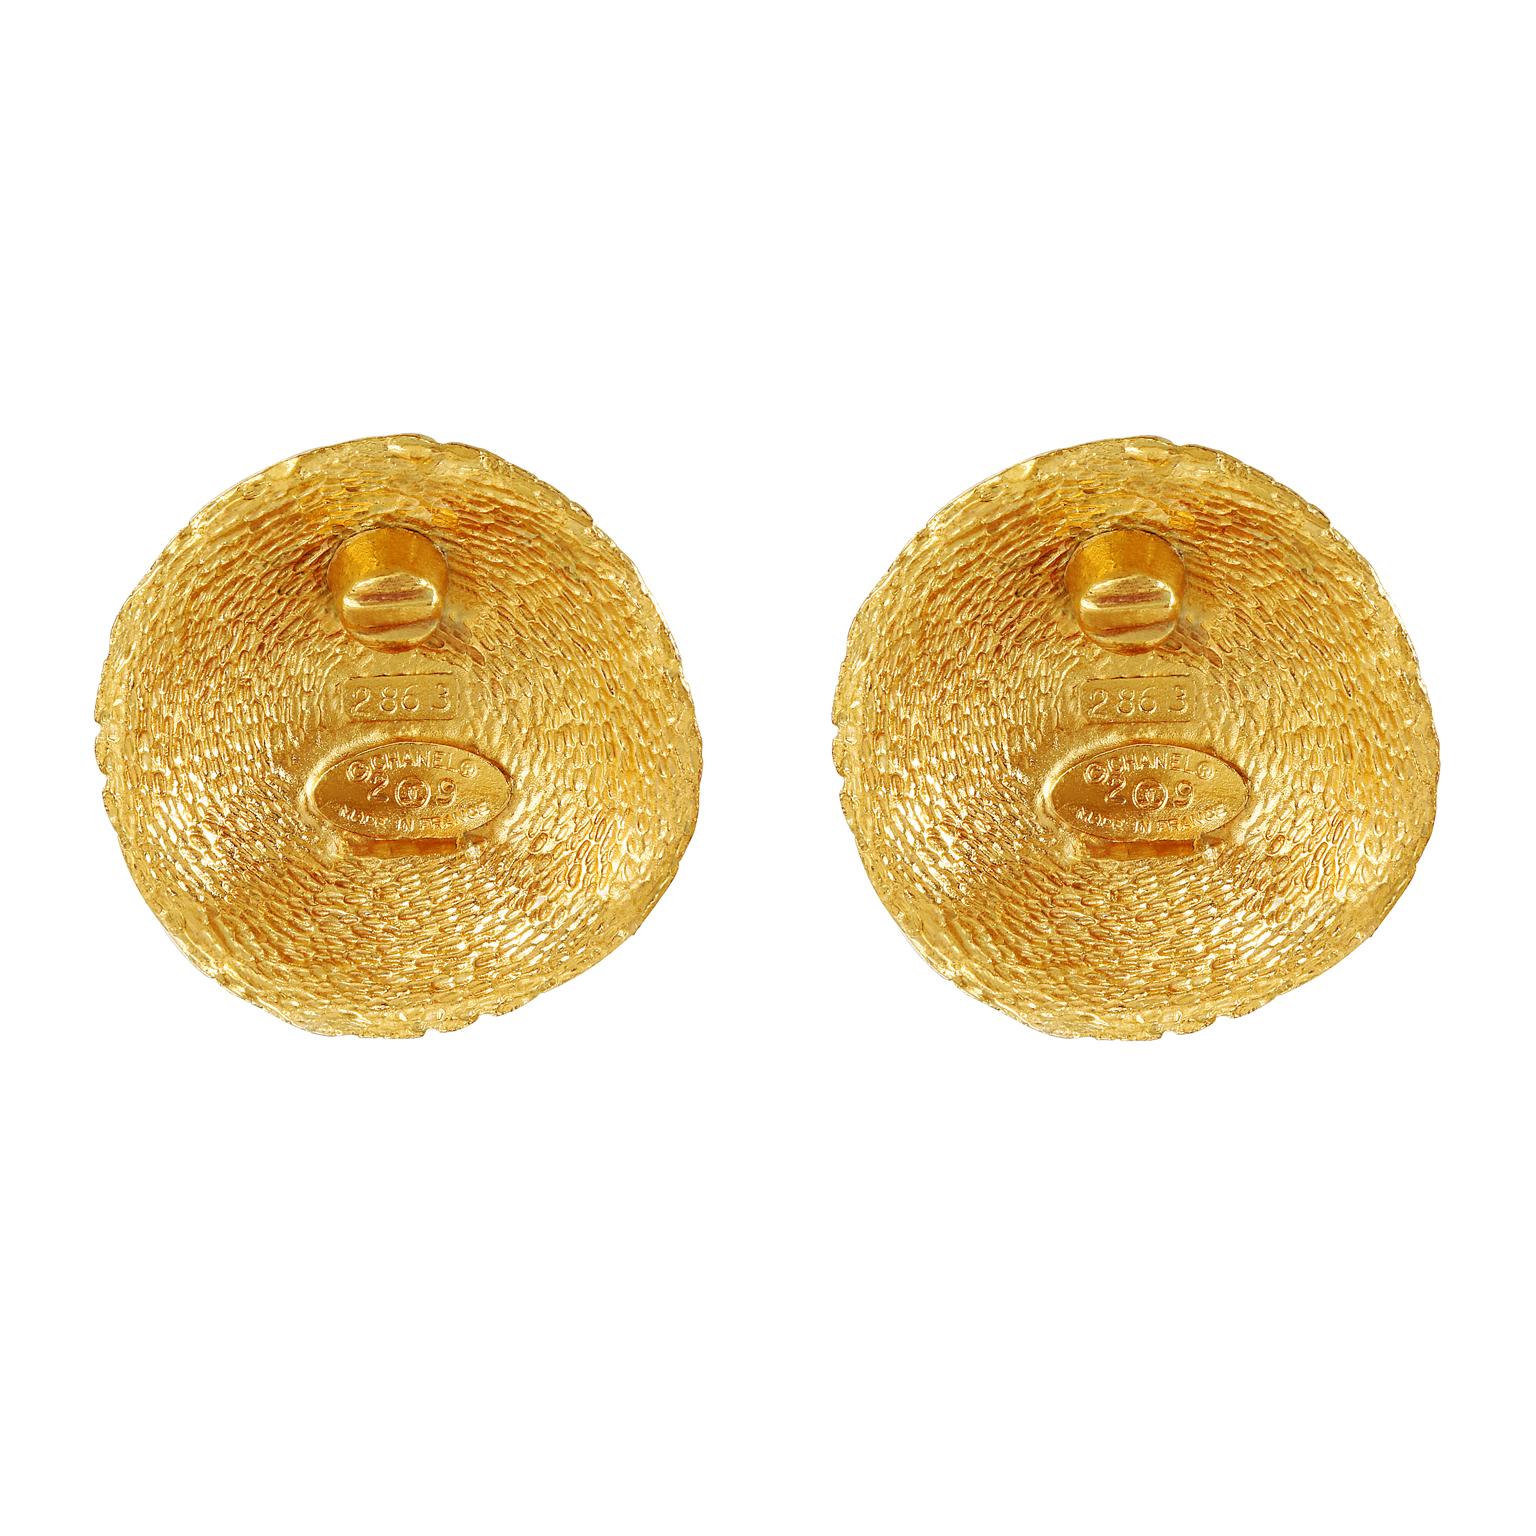 cc gold earrings